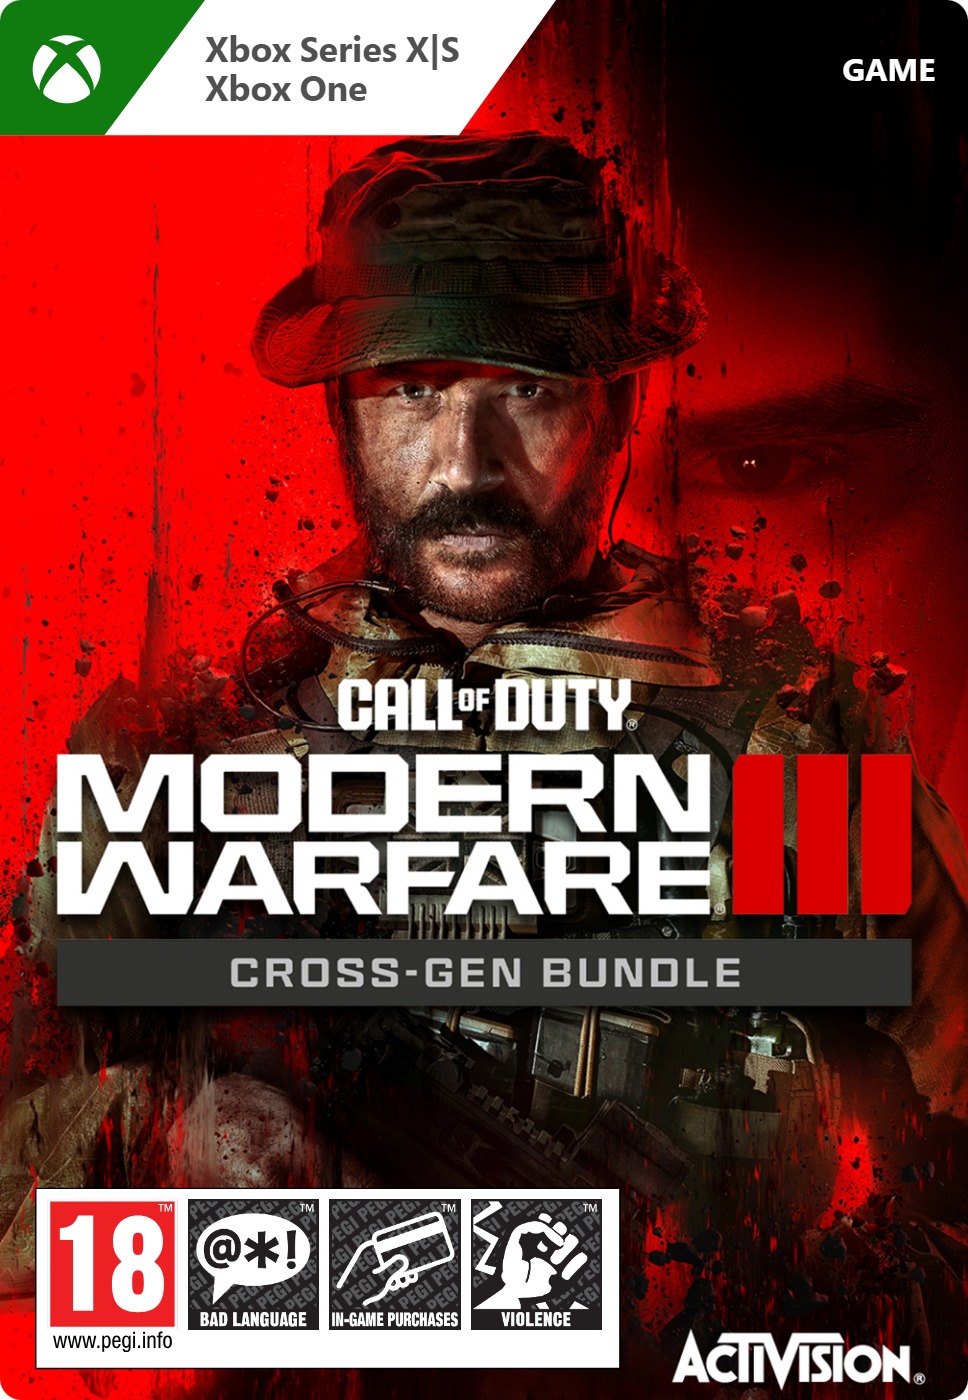 Call of Duty - Modern Warfare III - Cross-Gen Bundle EN